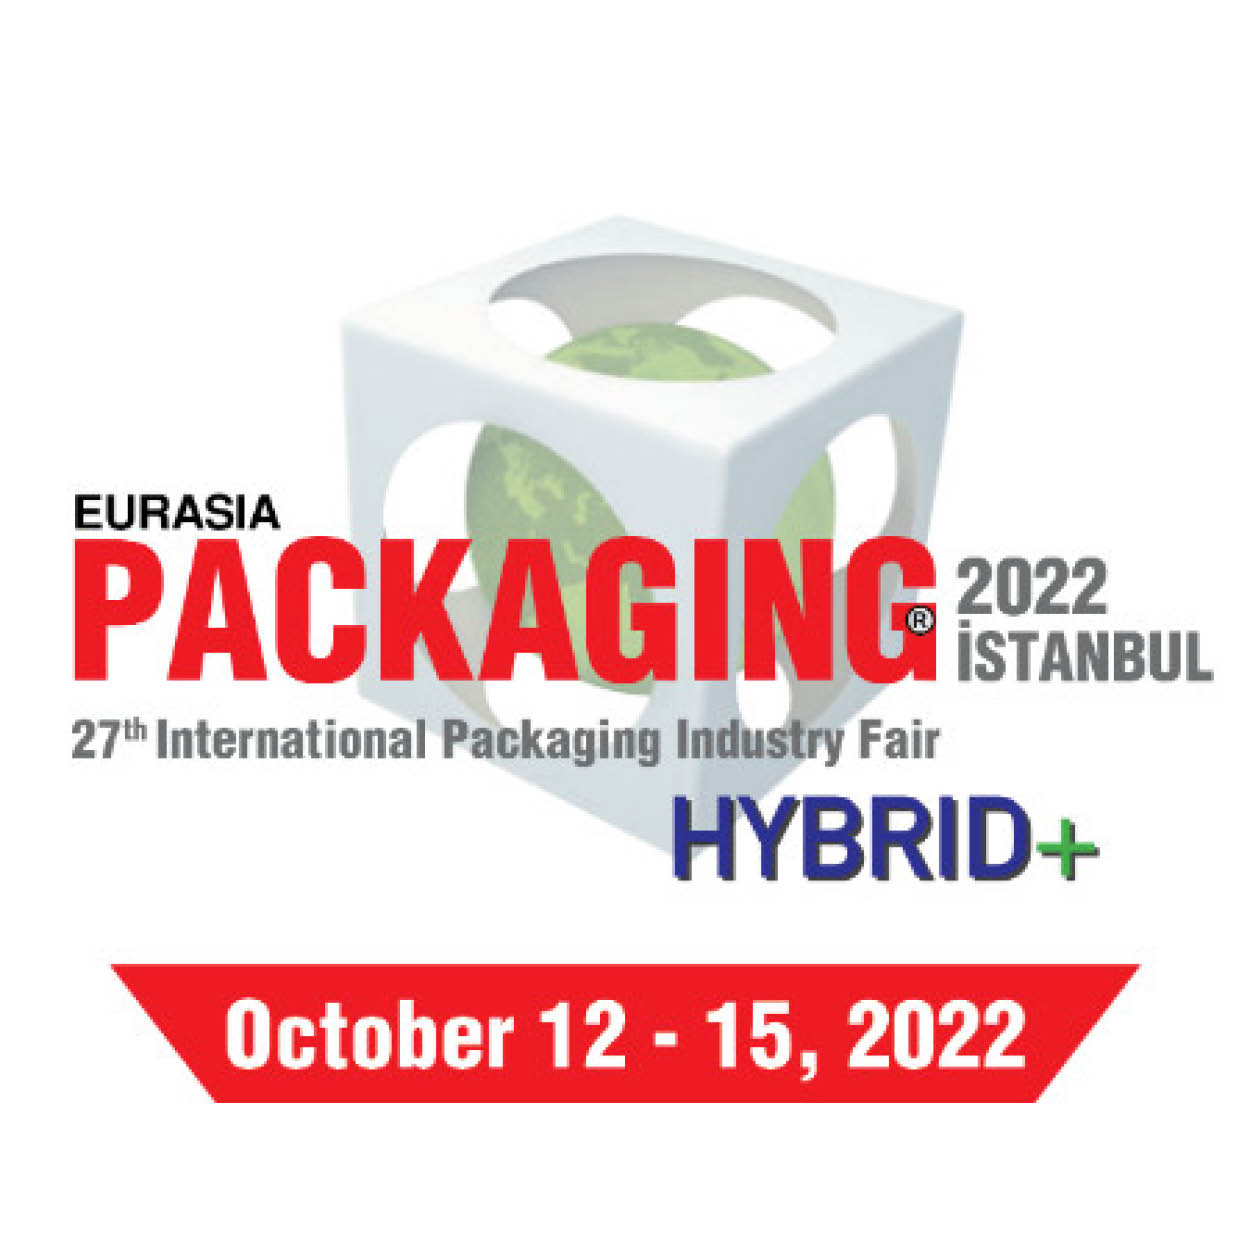 Eurasia Packaging Istanbul Logo